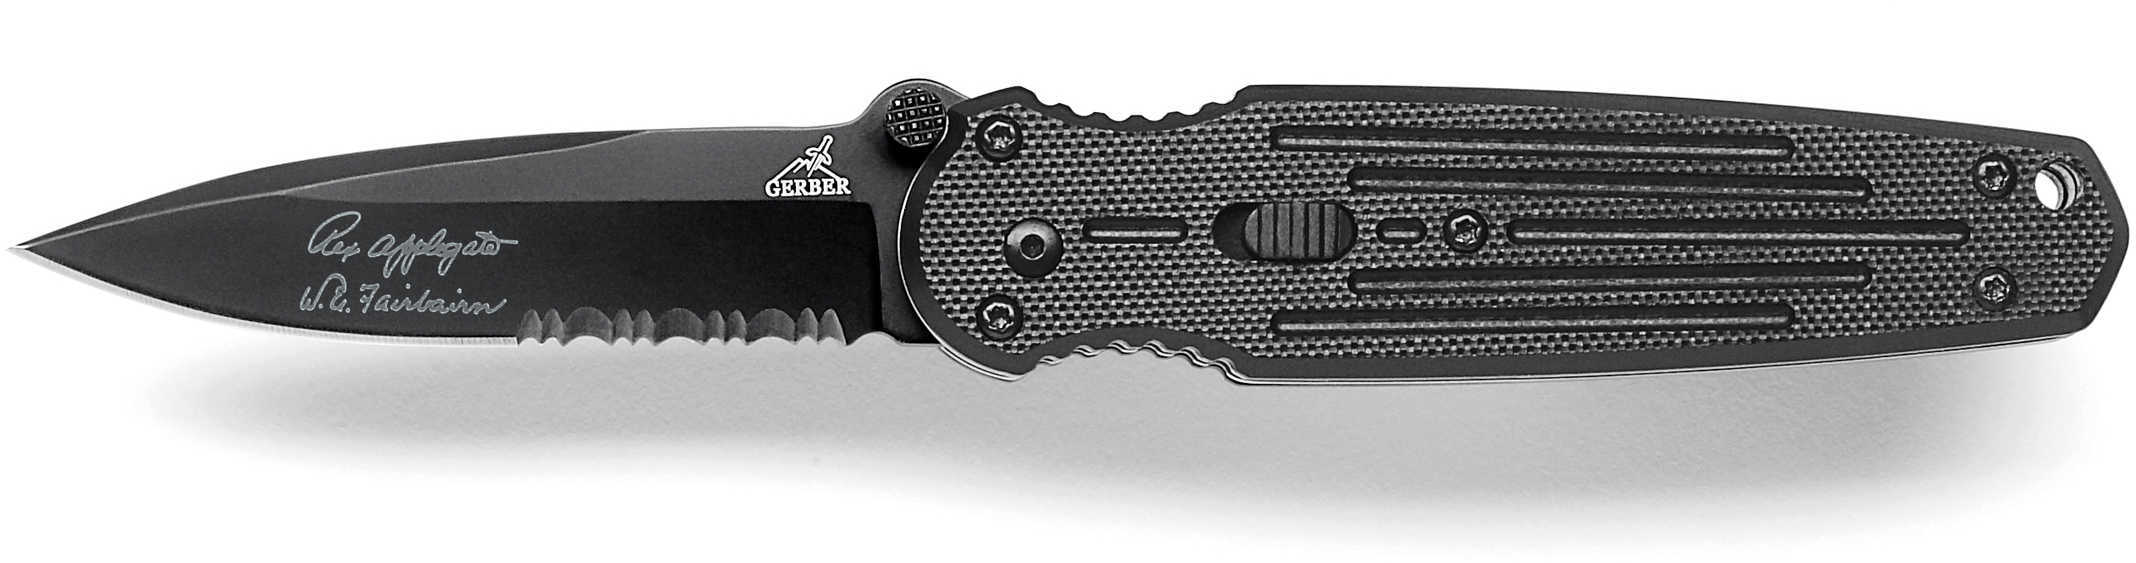 Gerber Blades Convert Mini, Fast, Serrated Edge, Box 22-01967